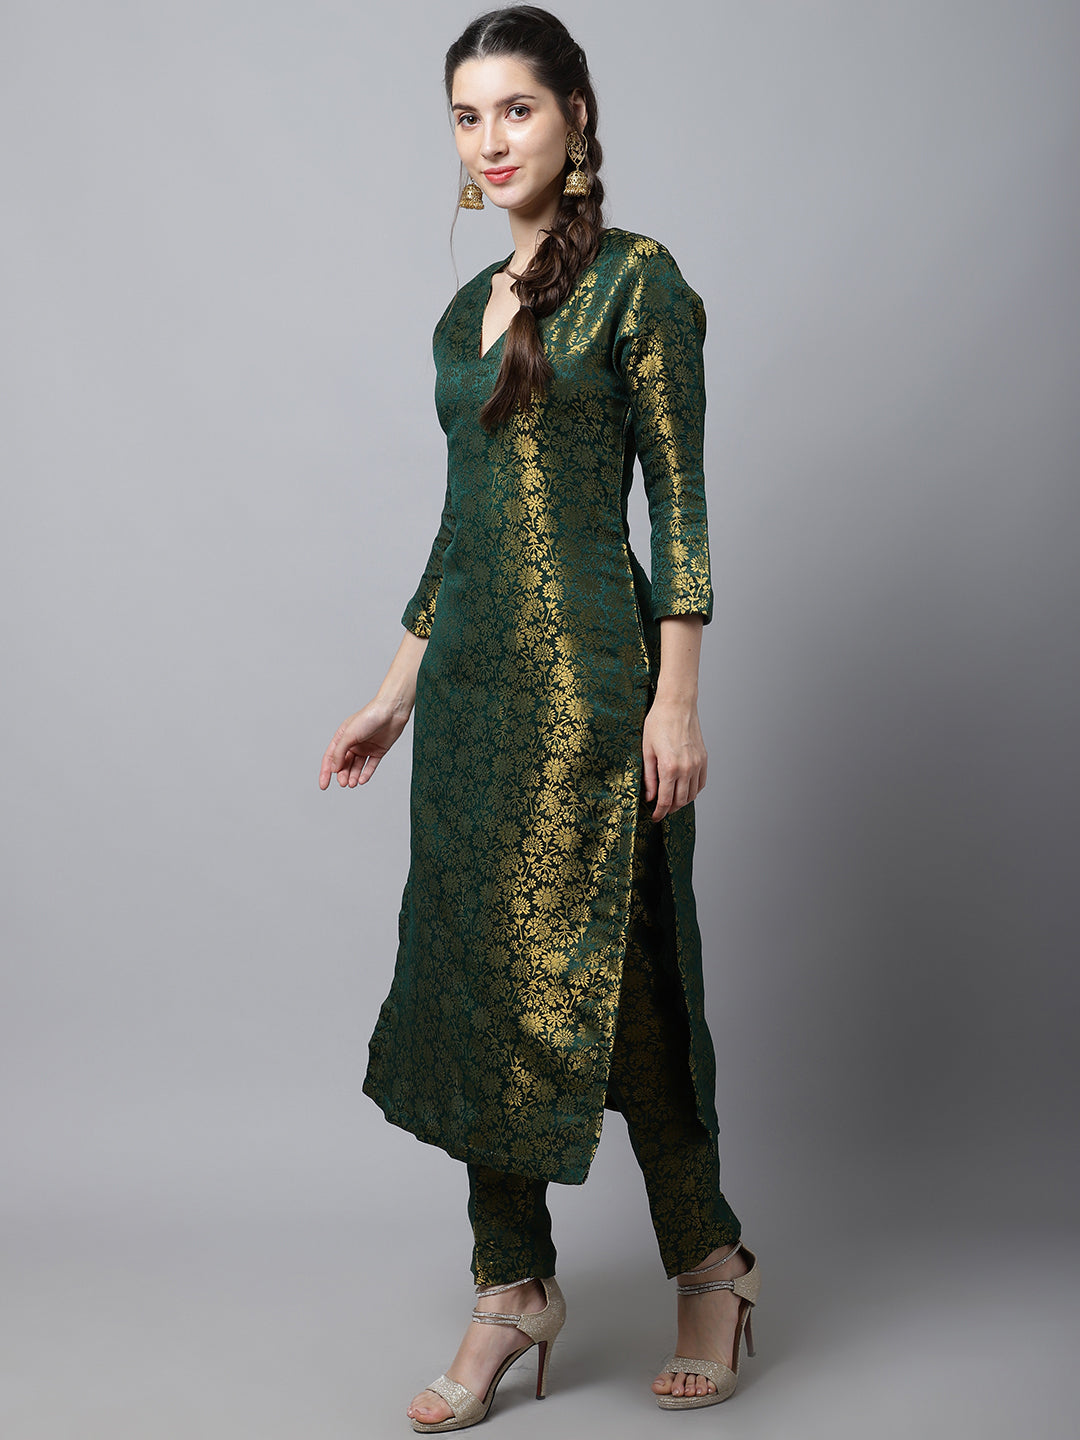 Bottle Green Brocade Sharara Pants Salwar Kameez Designer - Etsy Sweden